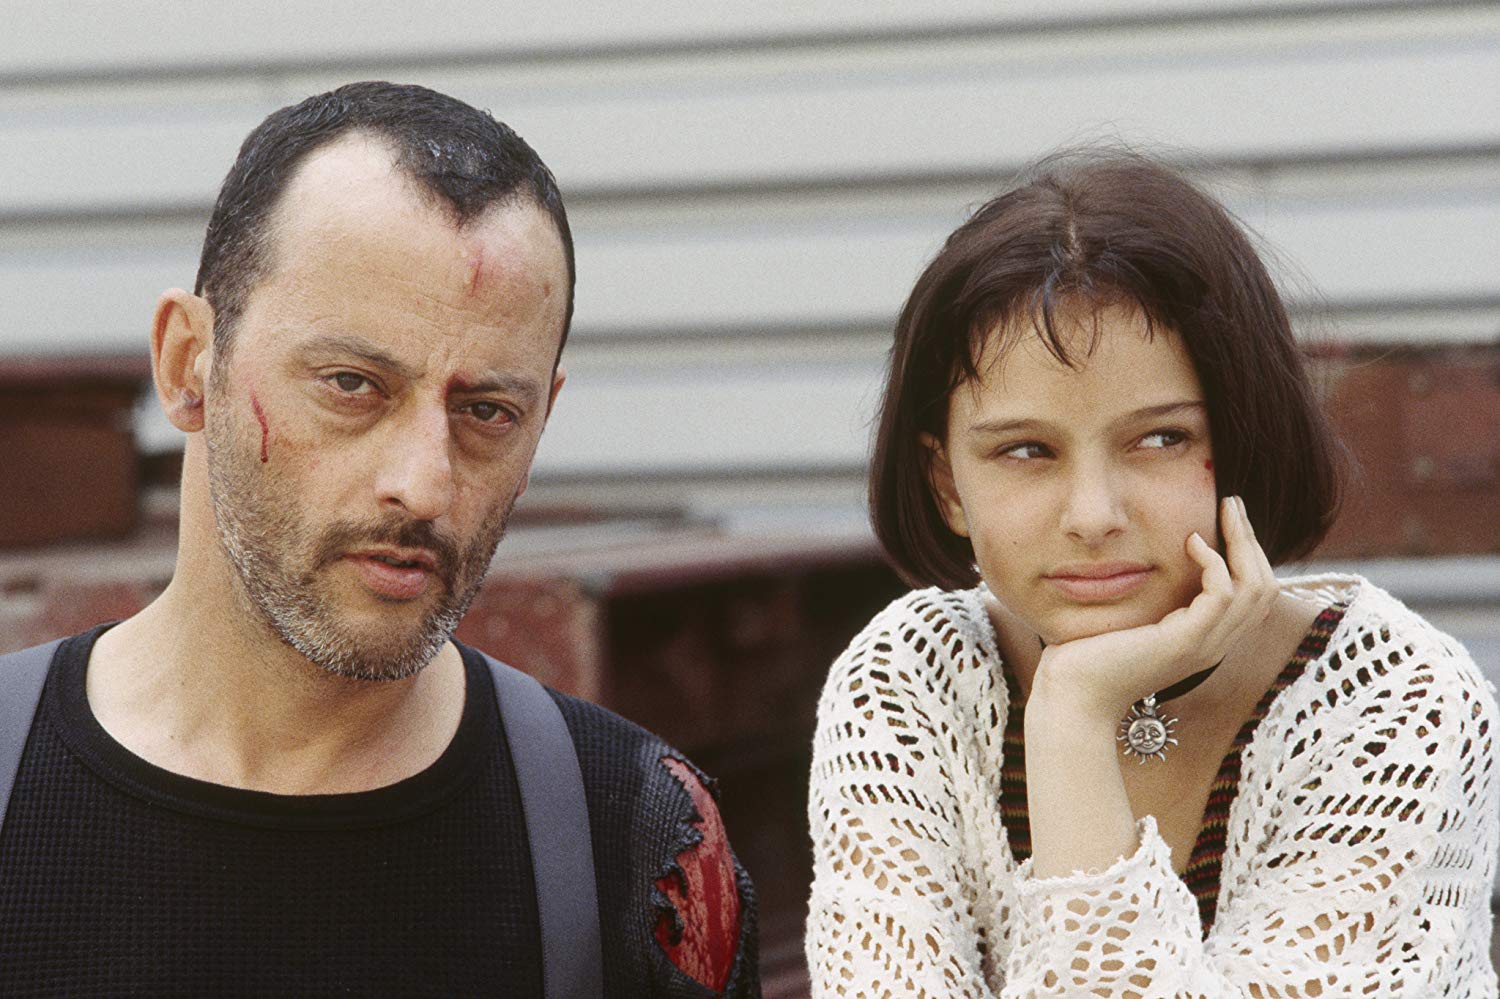 L'image du jour : Jean Reno et Natalie Portman dans le film Léon